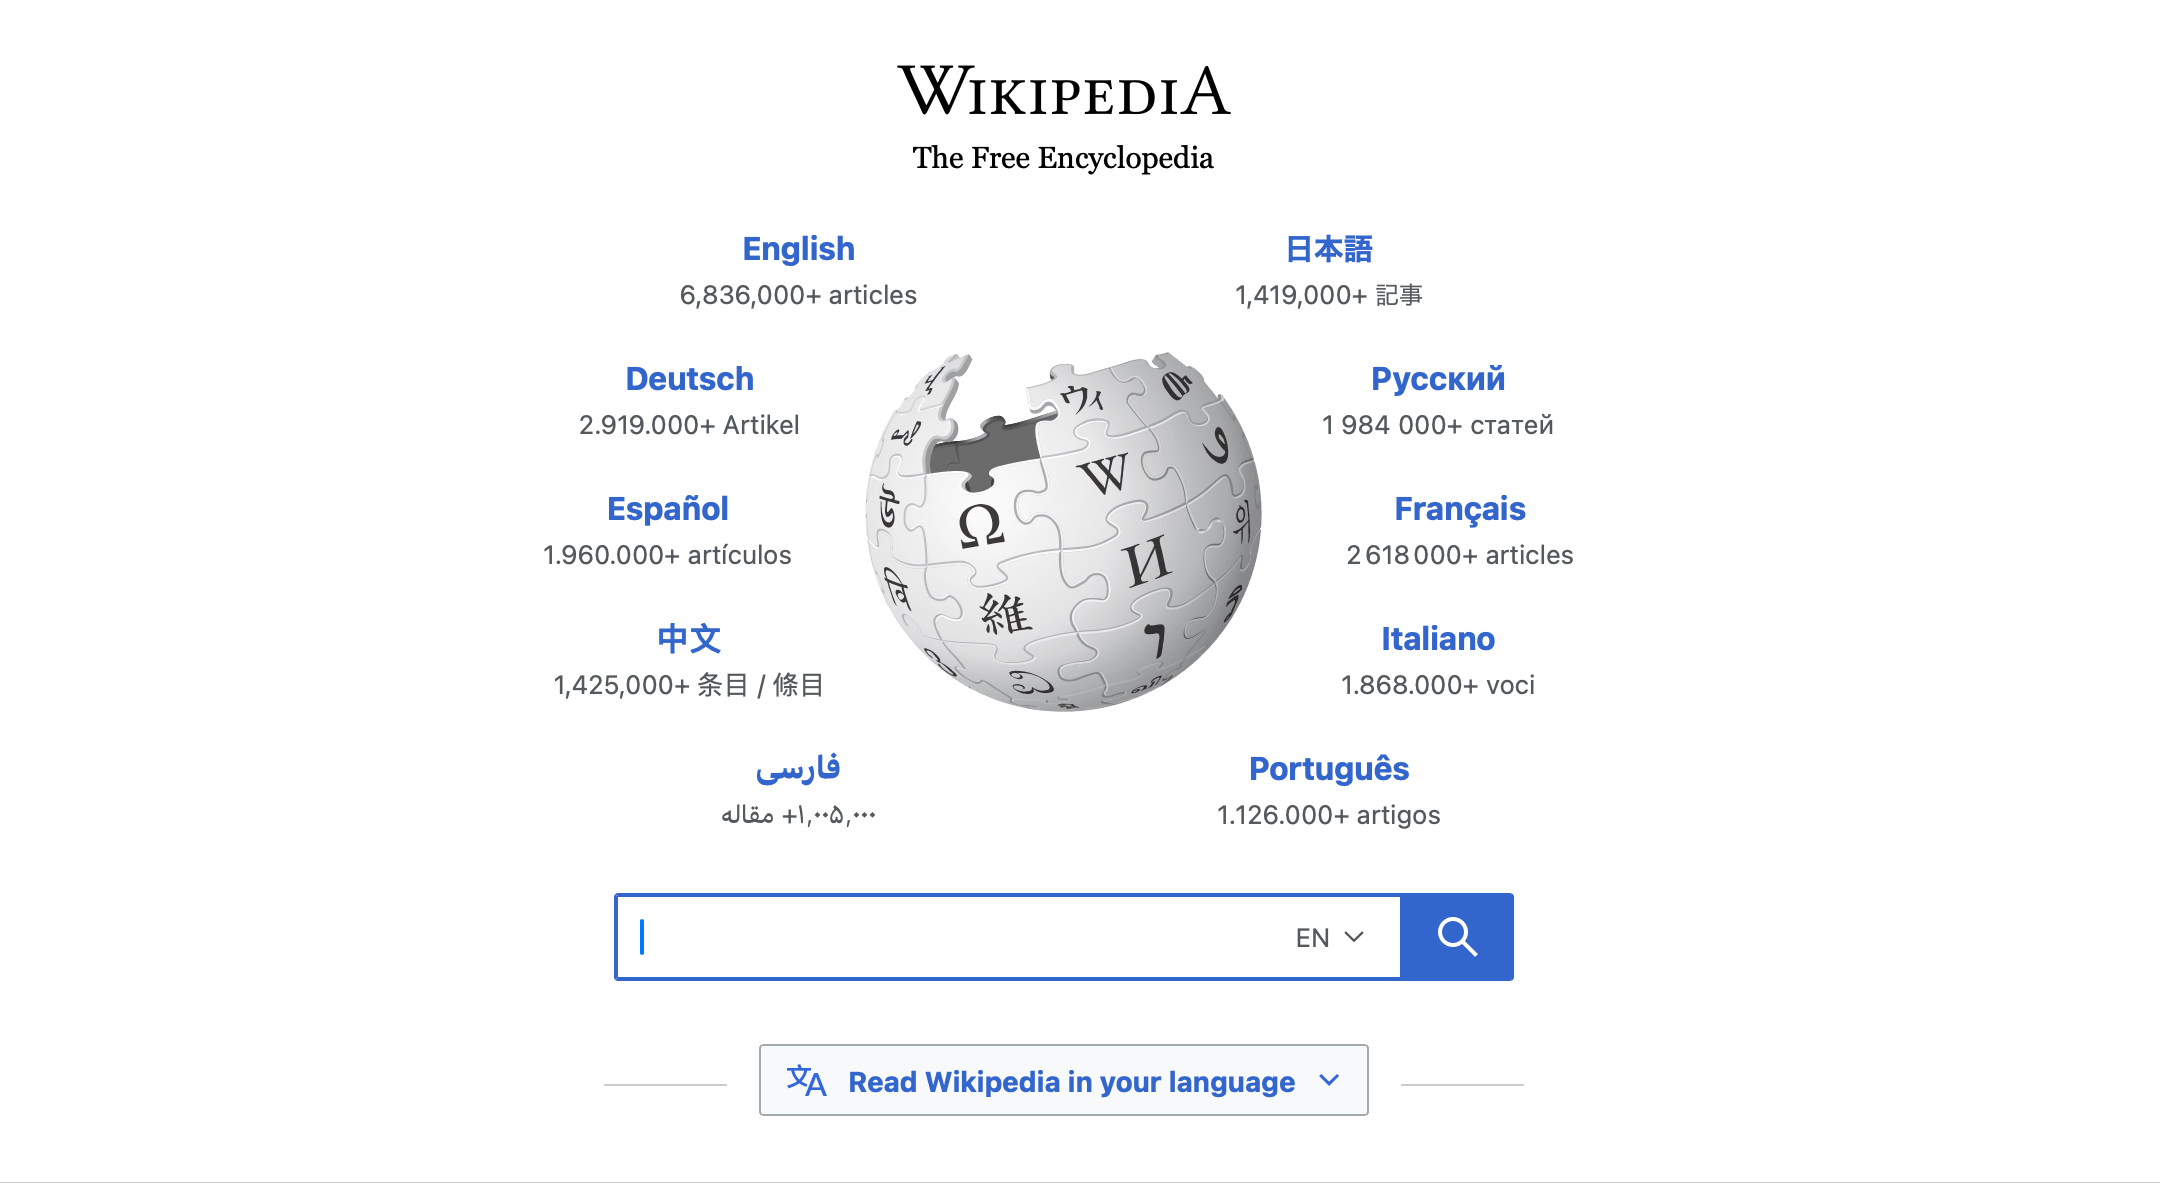 A screenshot of Wikipedia’s homepage